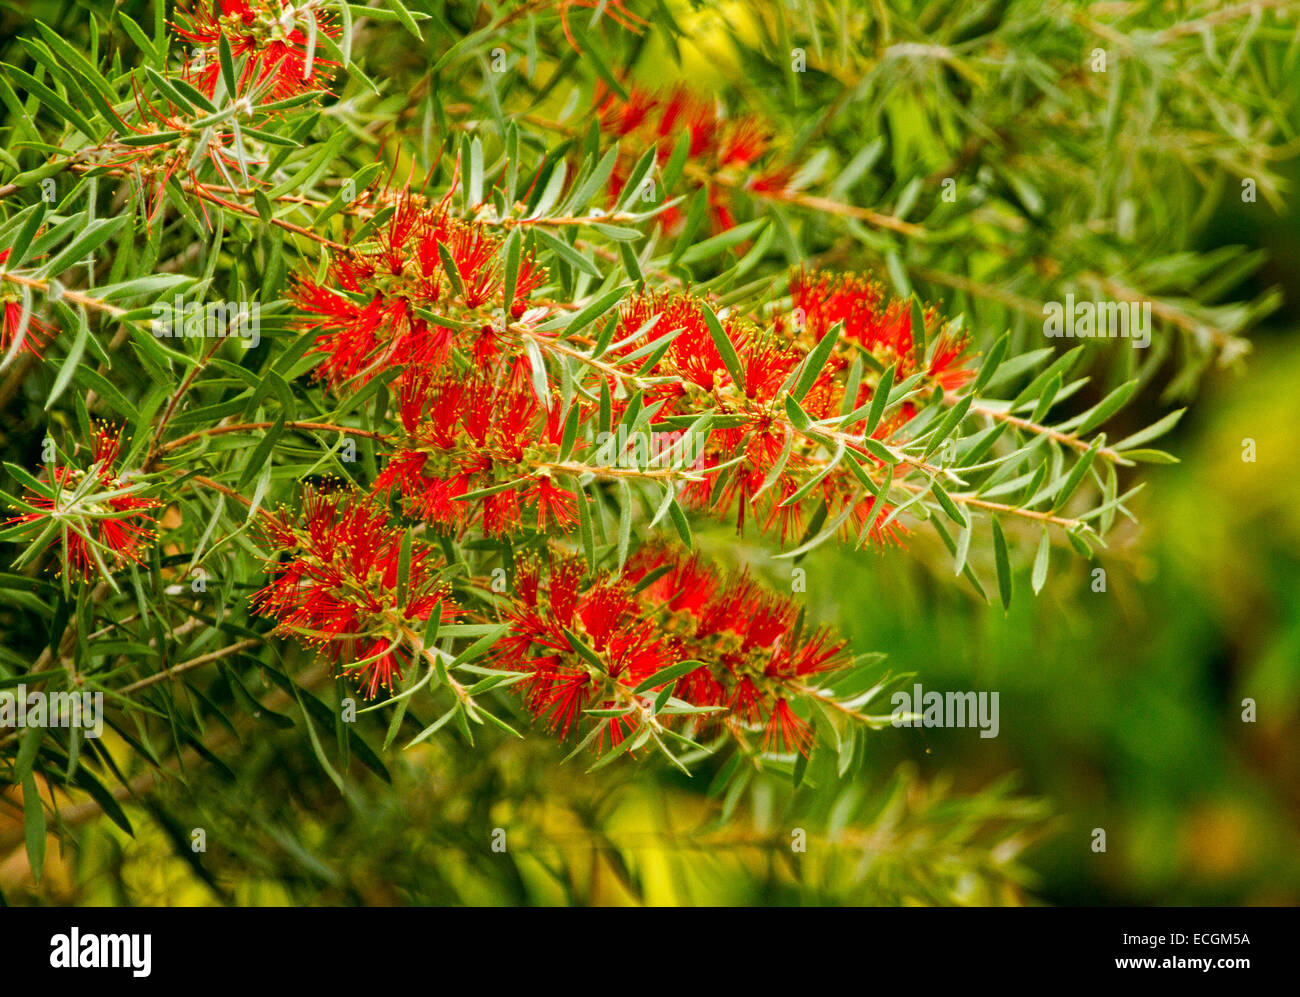 Large cluster of vivid red bottlebrush flowers and green leaves of Callistemon citrinus, Australian native shrub Stock Photo